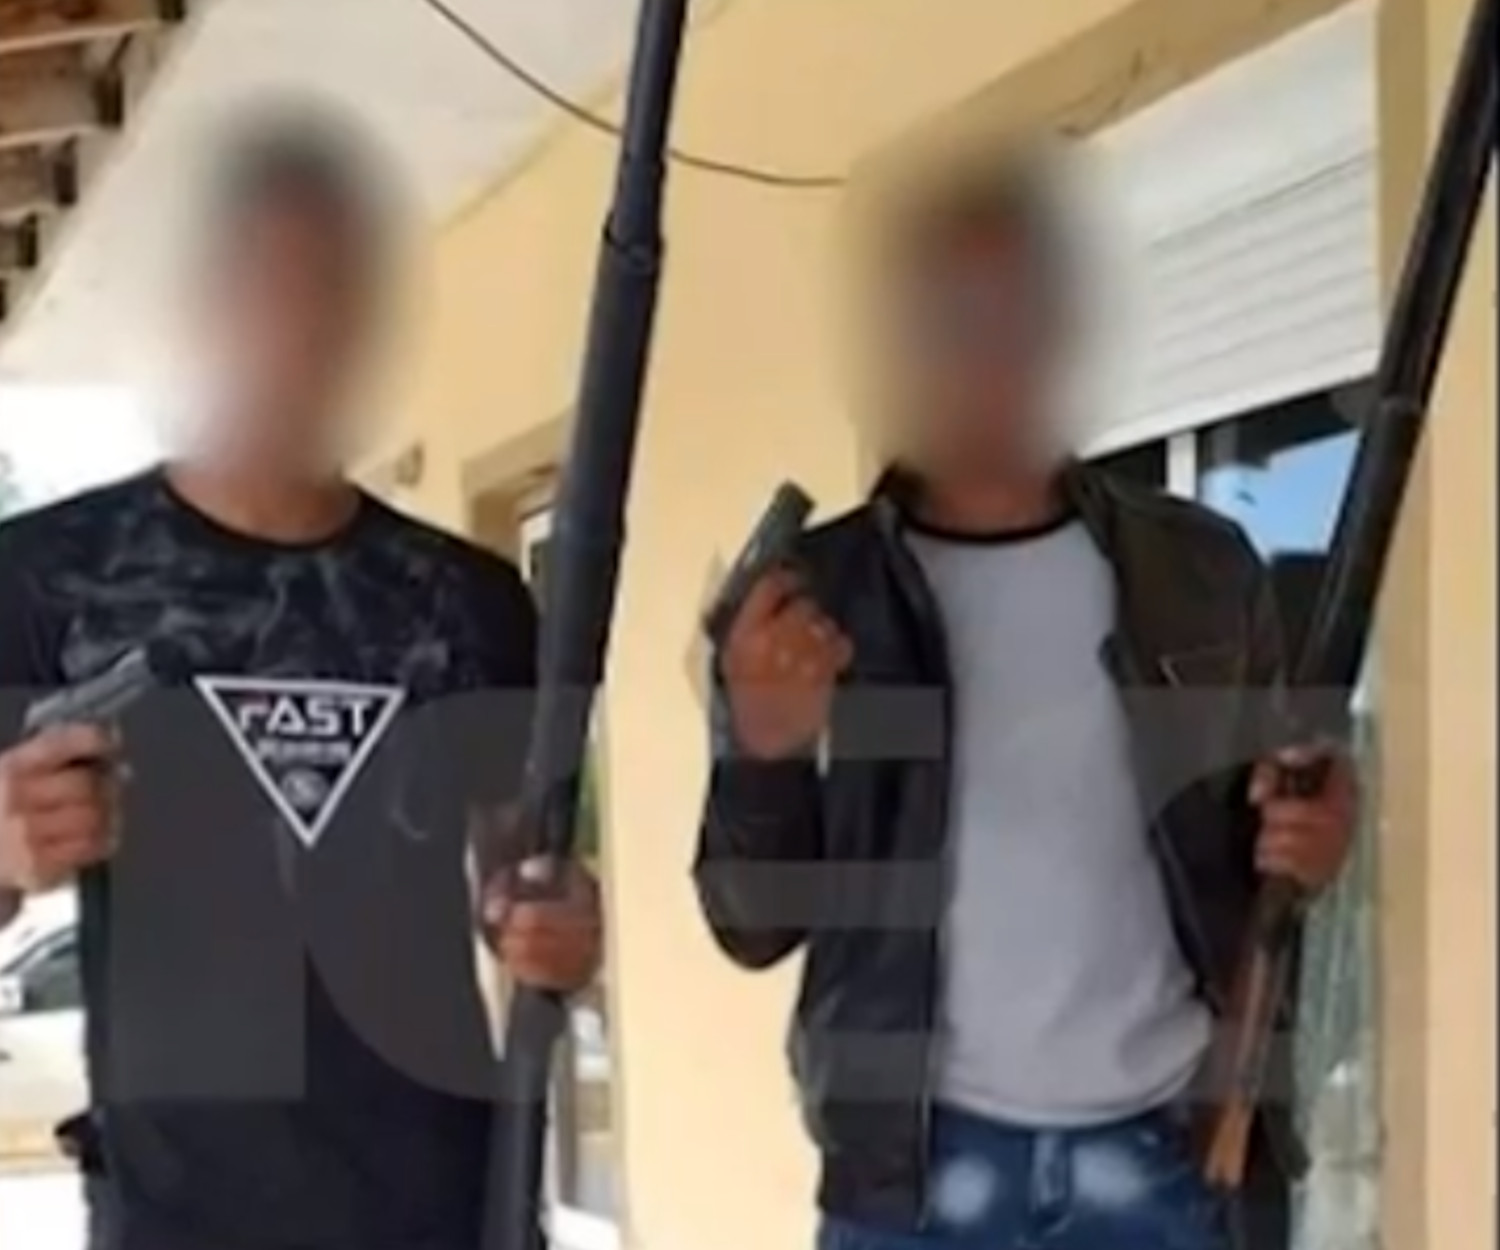 Δυτική Αττική: Σάλος με τις εικόνες ανηλίκων που ποζάρουν με όπλα